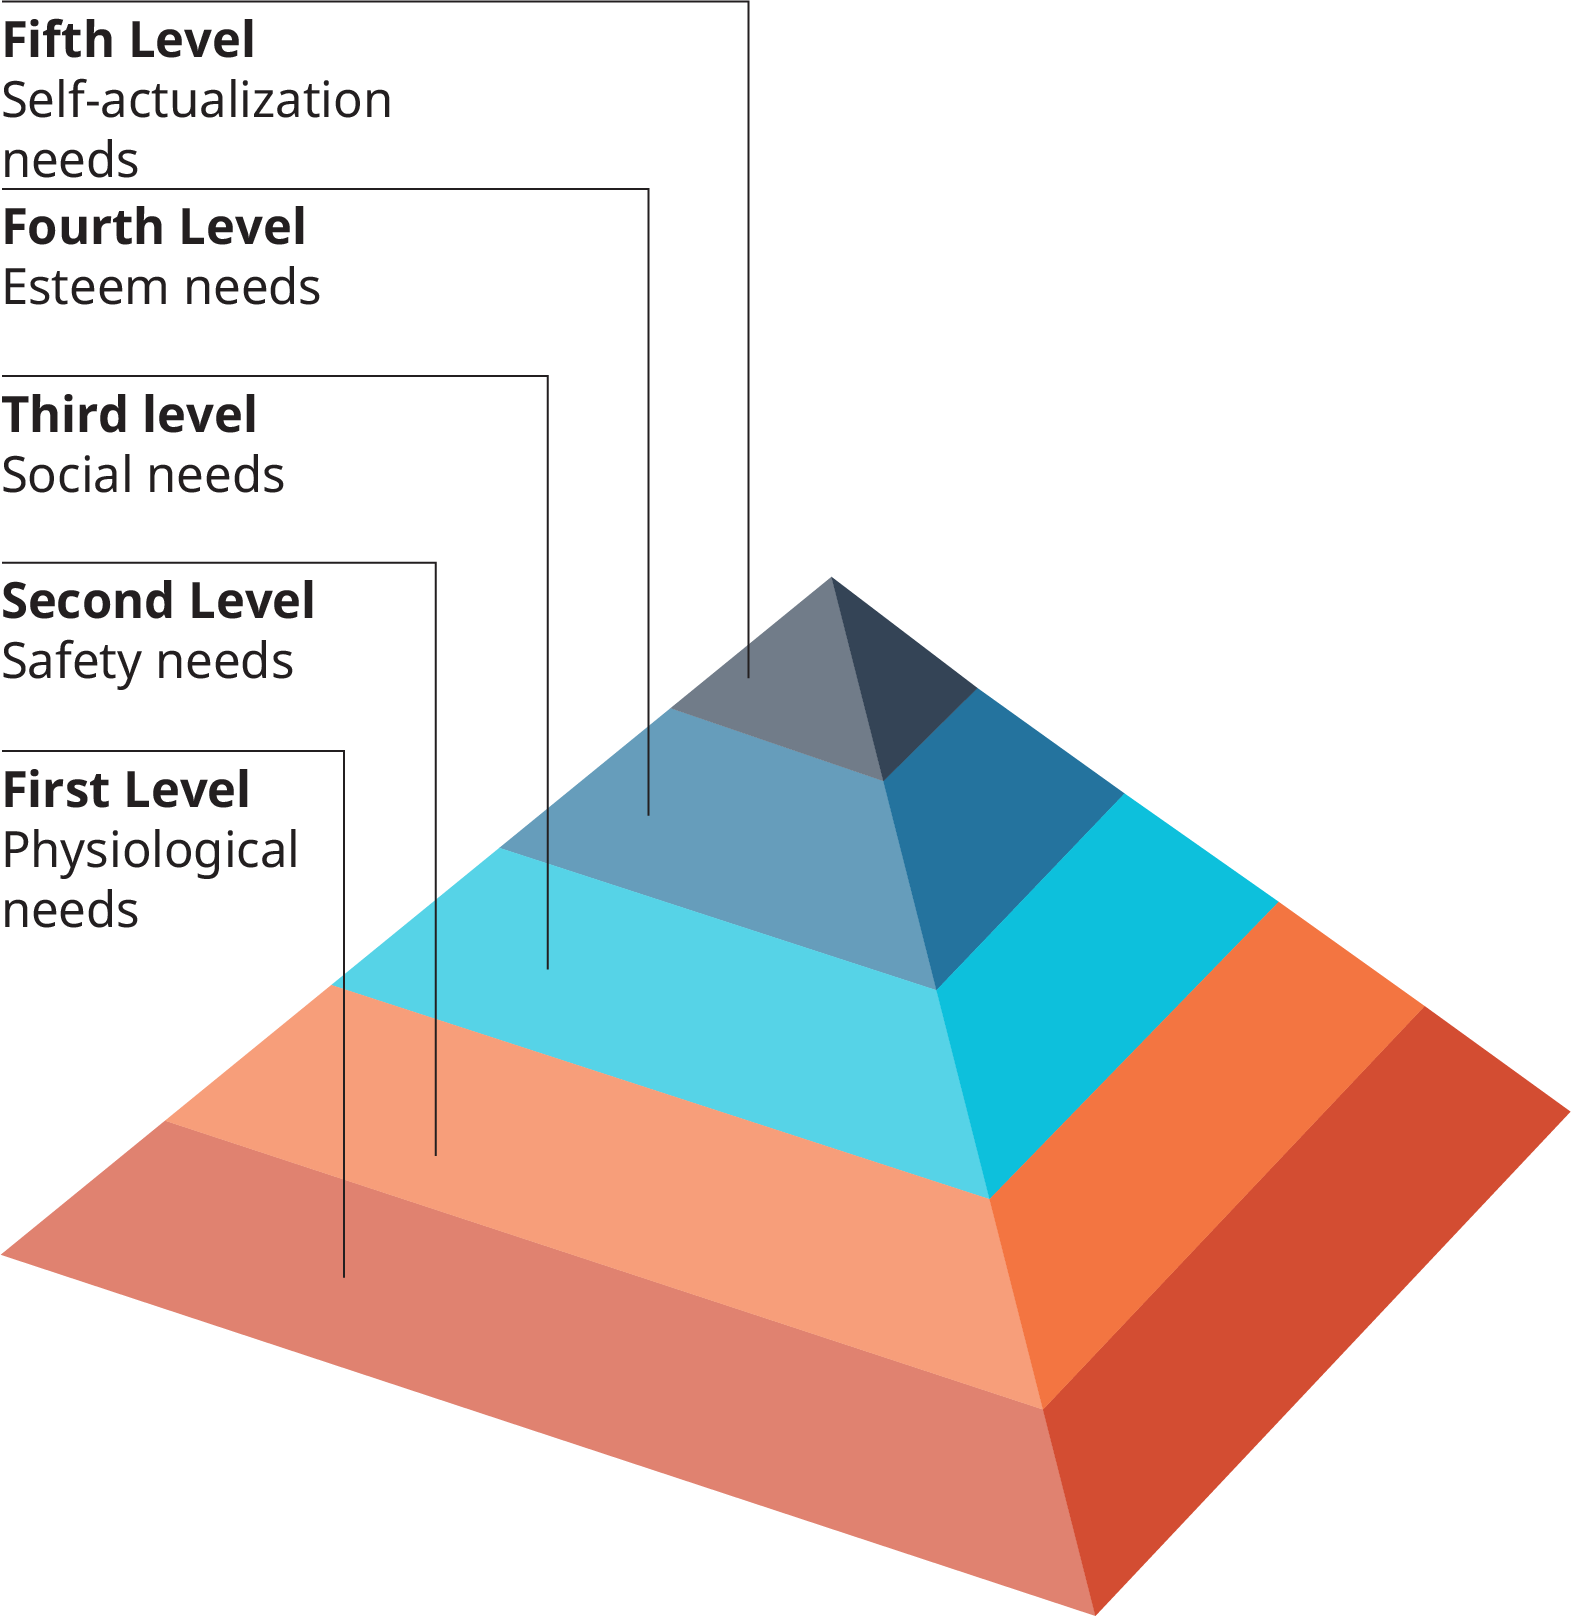 La base de la pirámide está etiquetada de primer nivel, necesidades fisiológicas. El siguiente nivel arriba es el segundo nivel, necesidades de seguridad. El siguiente nivel arriba es el tercer nivel, las necesidades sociales. El cuarto nivel arriba son las necesidades de estima. El quinto nivel, y el vértice de la pirámide son las necesidades de autorrealización.